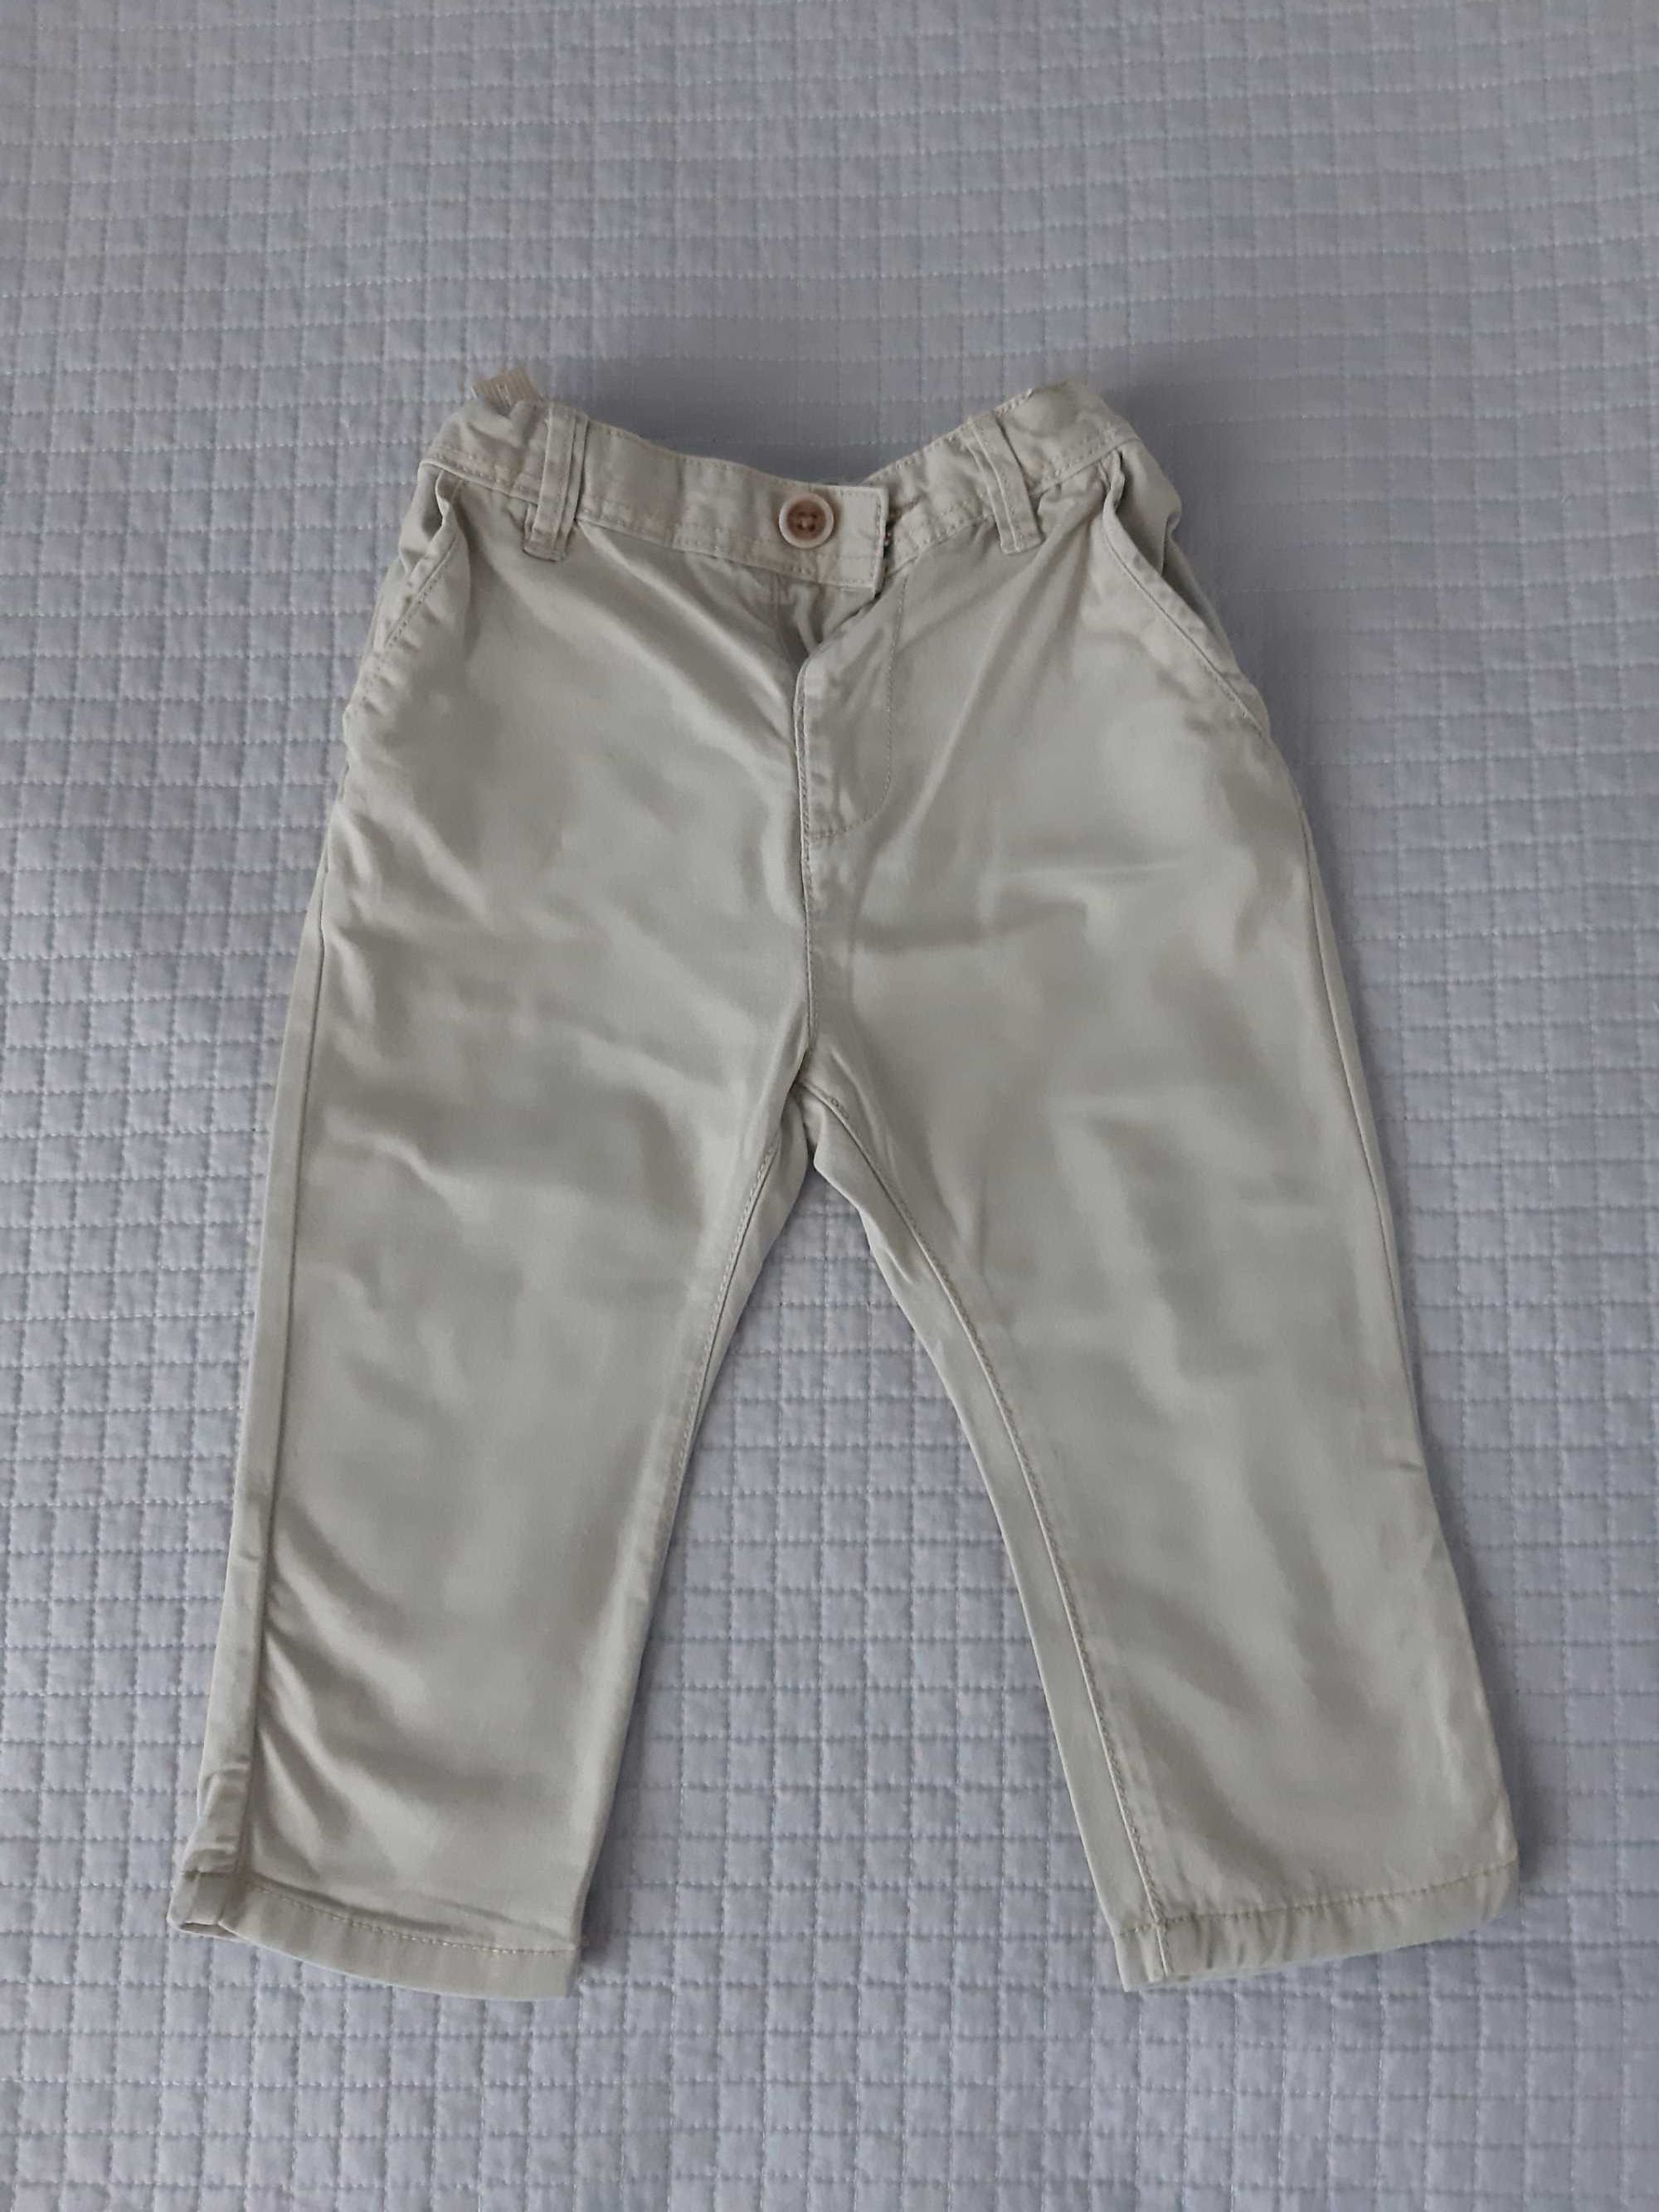 Spodnie spodenki Zara 80